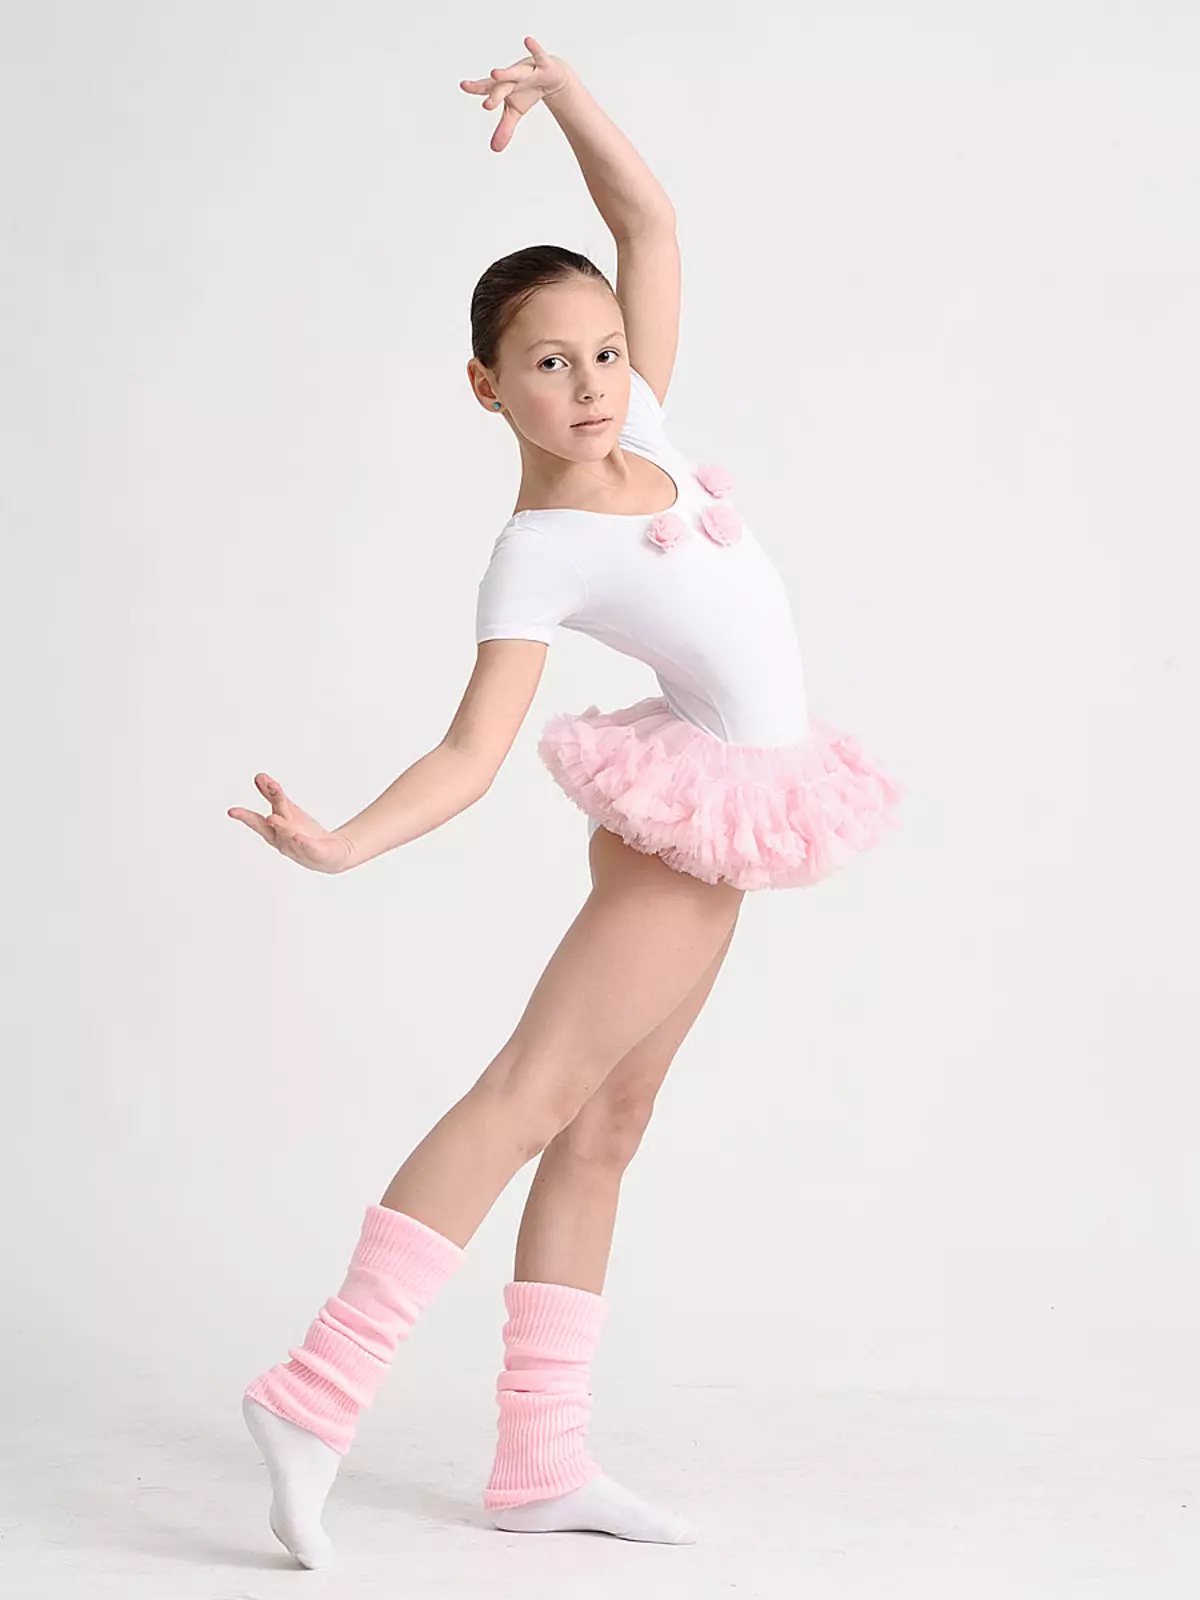 Swimsuit infantil para bailar con saia (45 fotos): Modelos de baile para nenas 13495_2